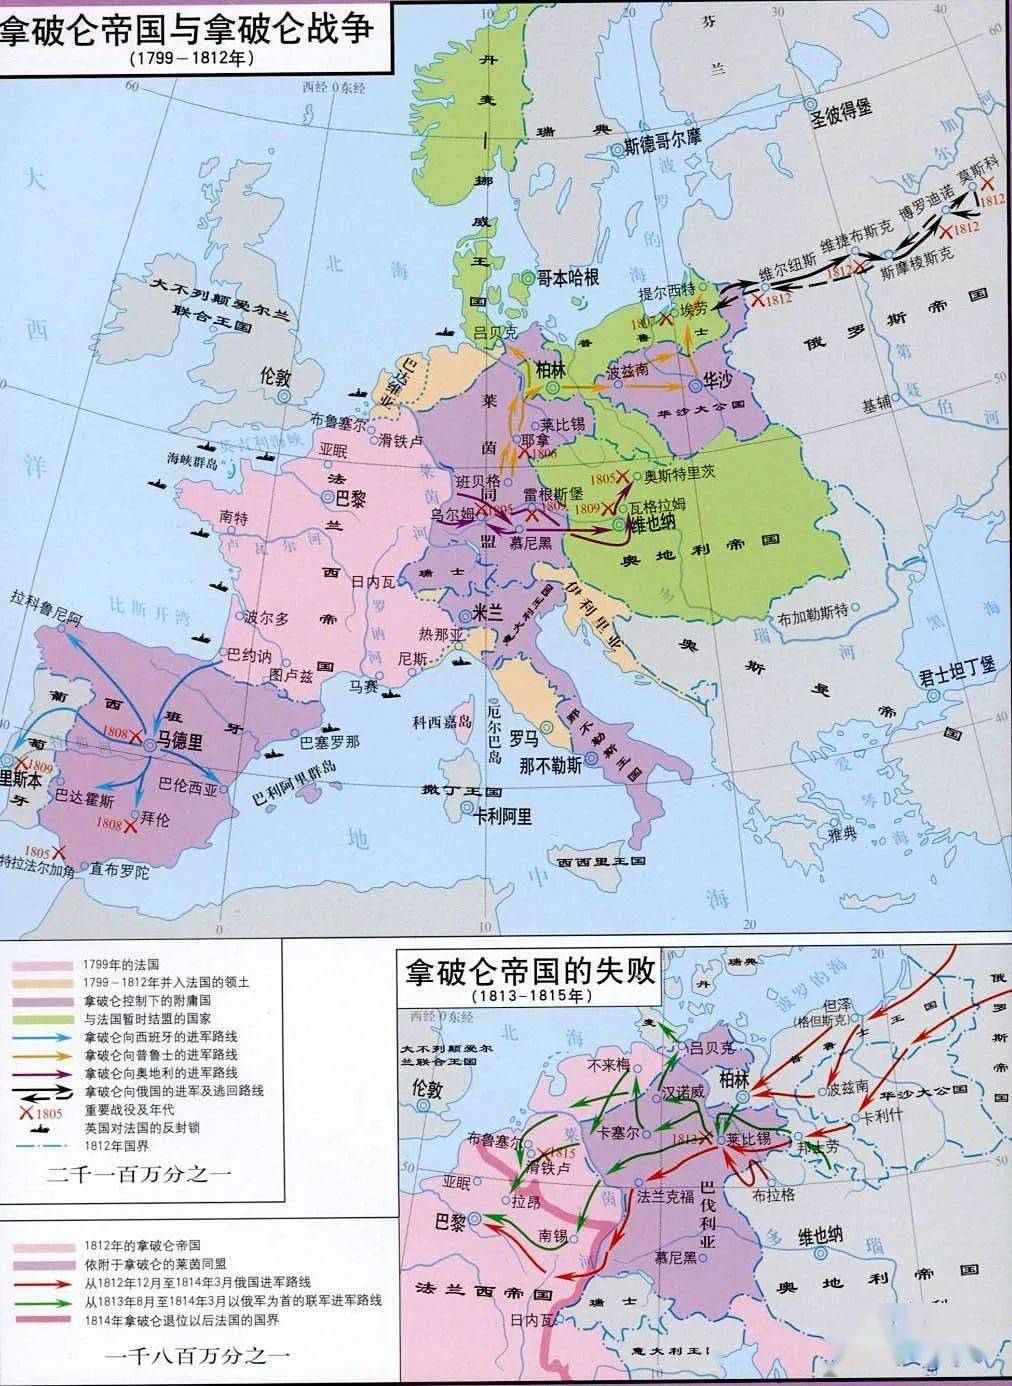 干货精心整理的186张世界历史地图赶紧转发收藏